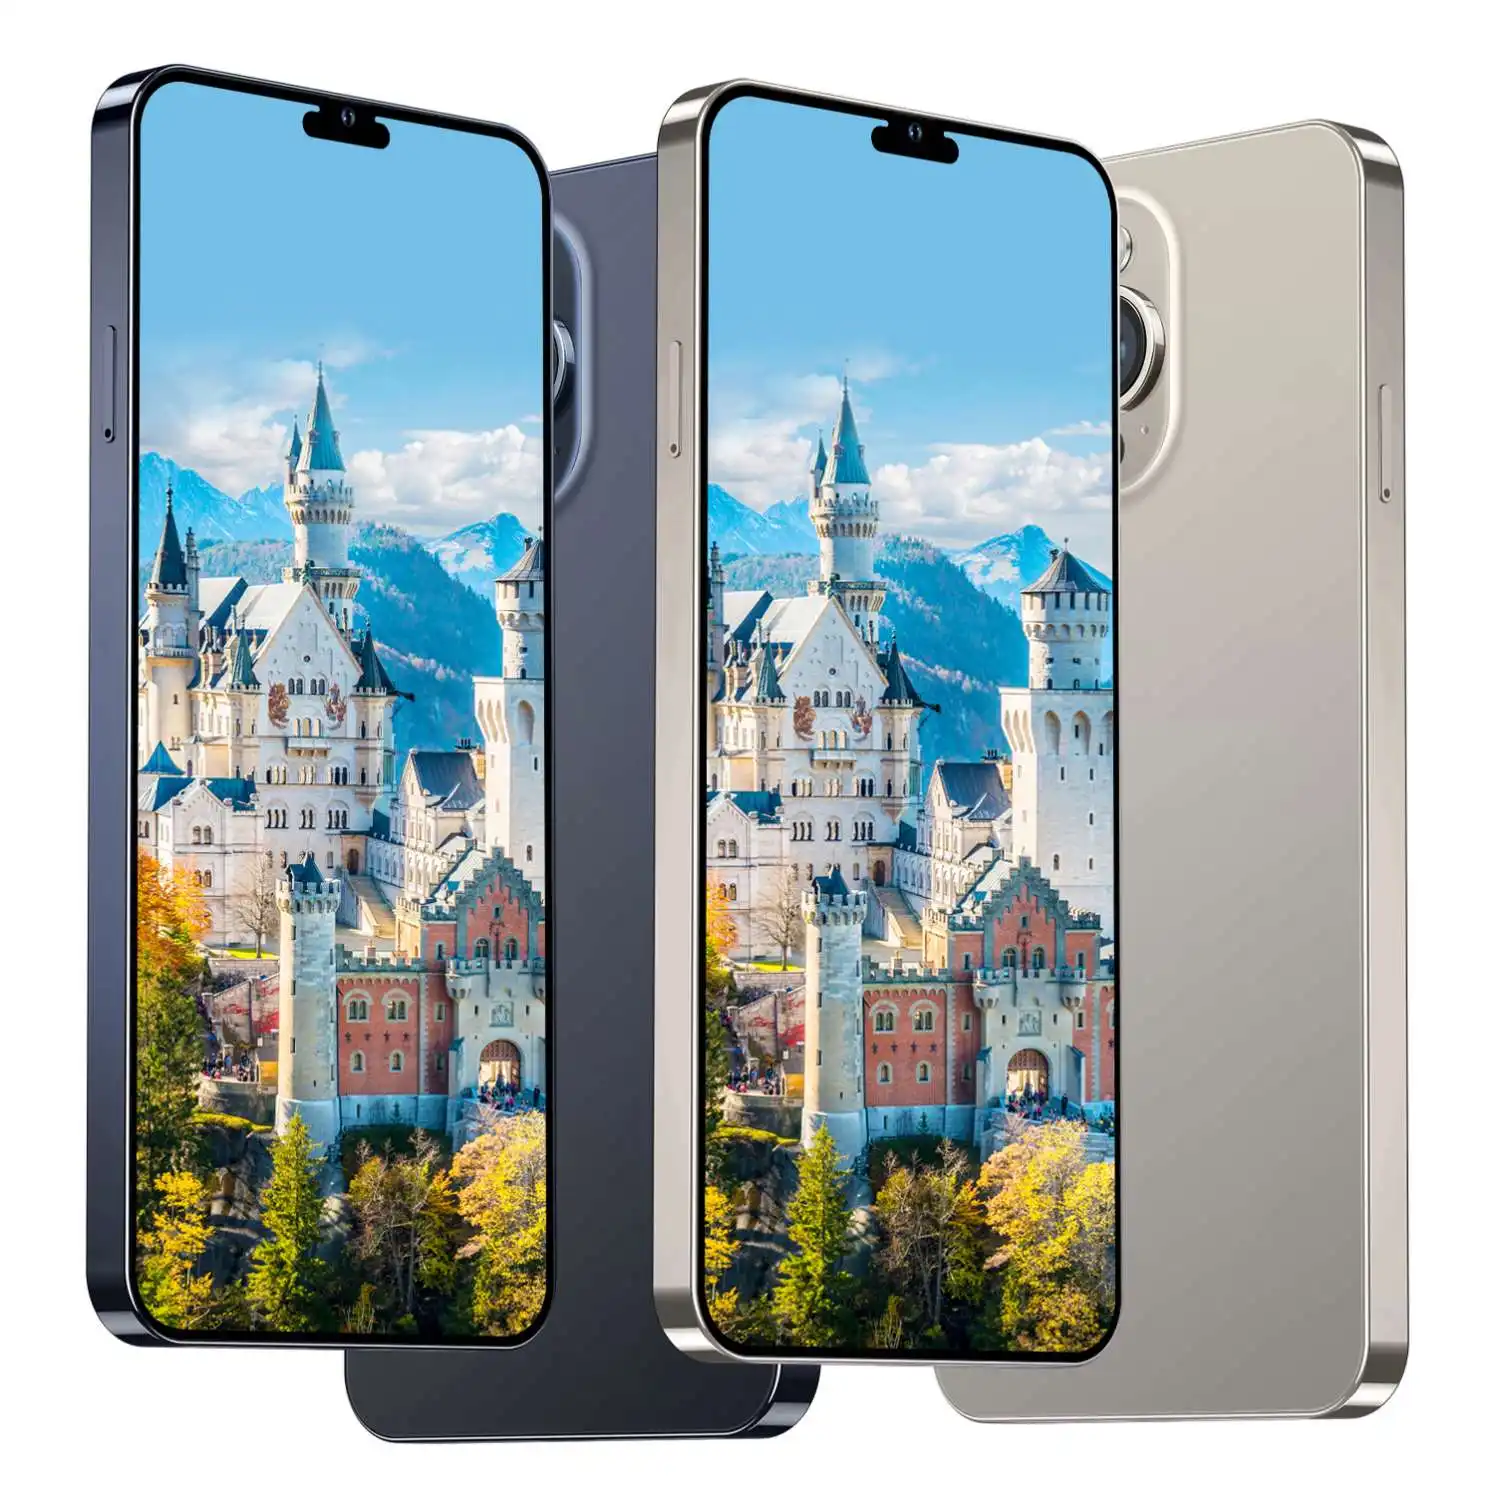 Trung Quốc Custom made 1GB + 8GB điện thoại thông minh I 13 Max Pro điện thoại di động I 13 Max Pro điện thoại di động